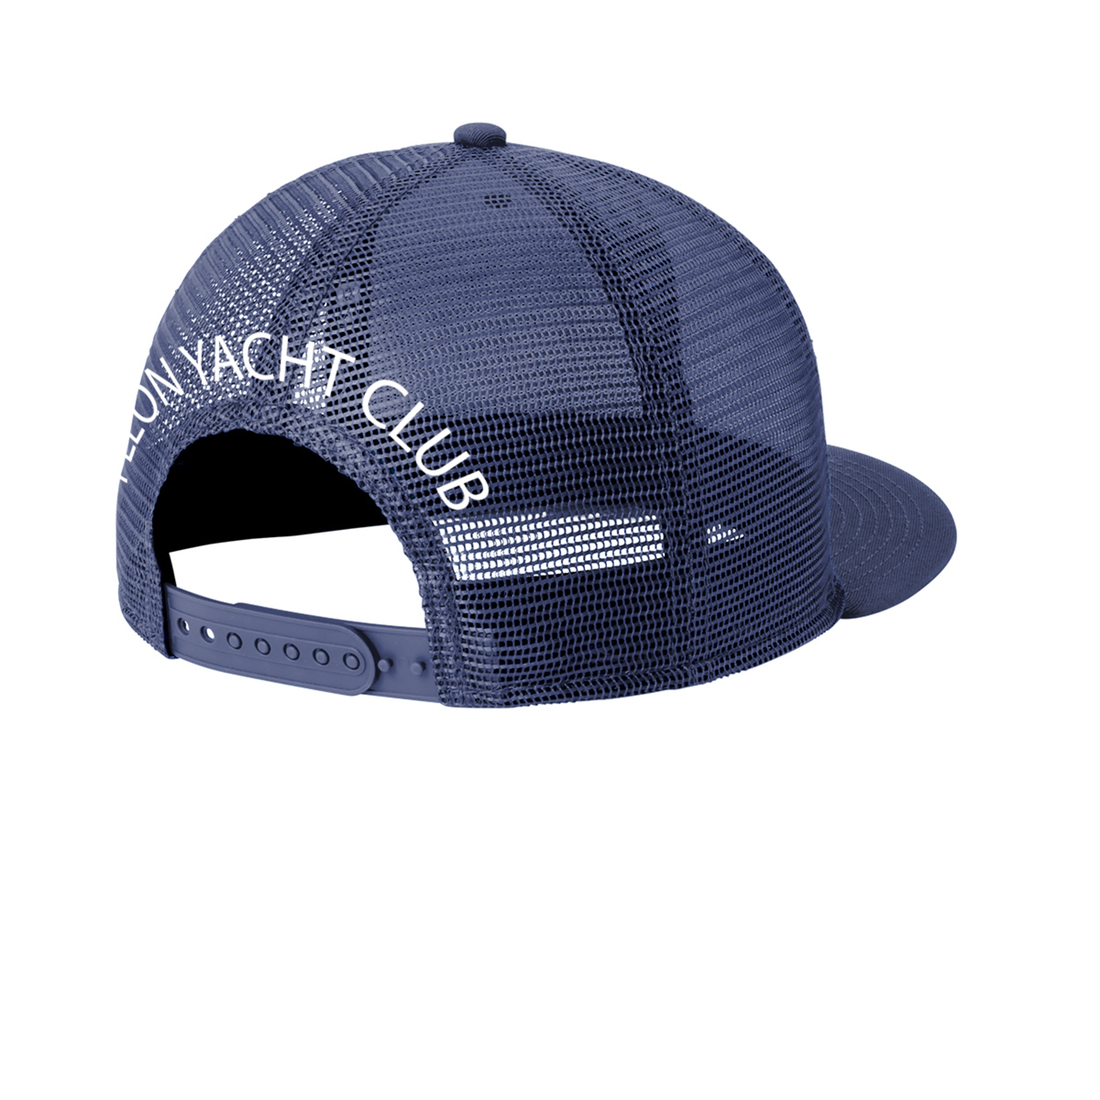 Pleon Yacht Club NewEra Trucker Hat